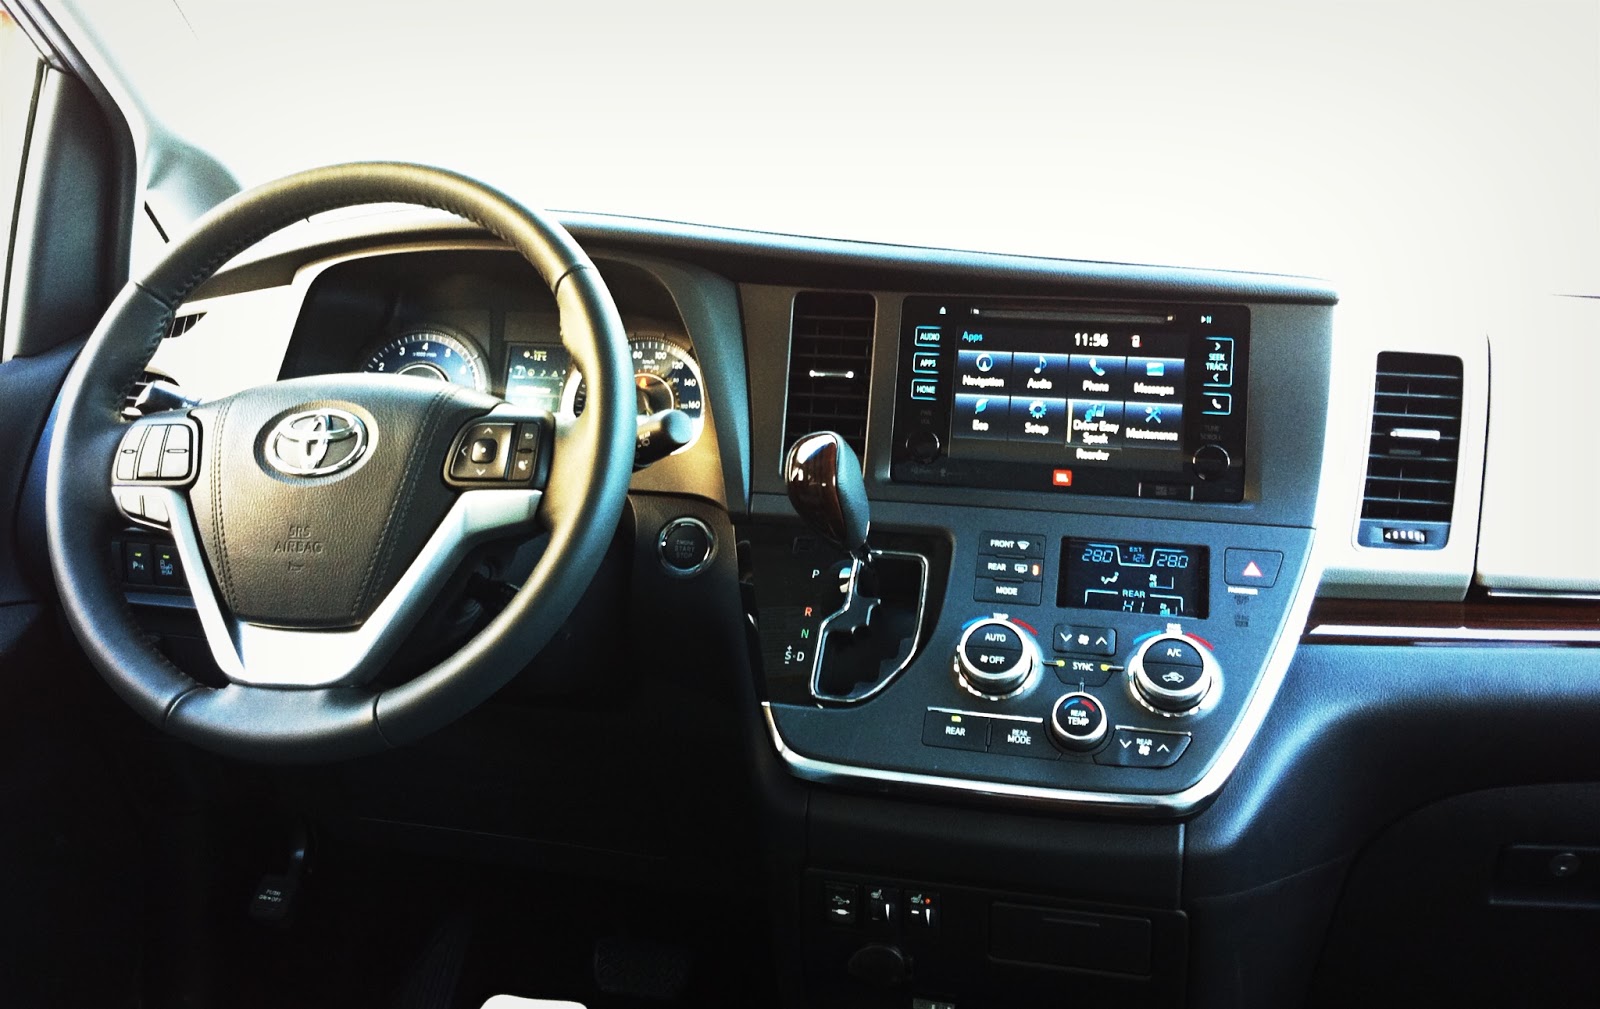 2015 Toyota Sienna XLE Limited interior